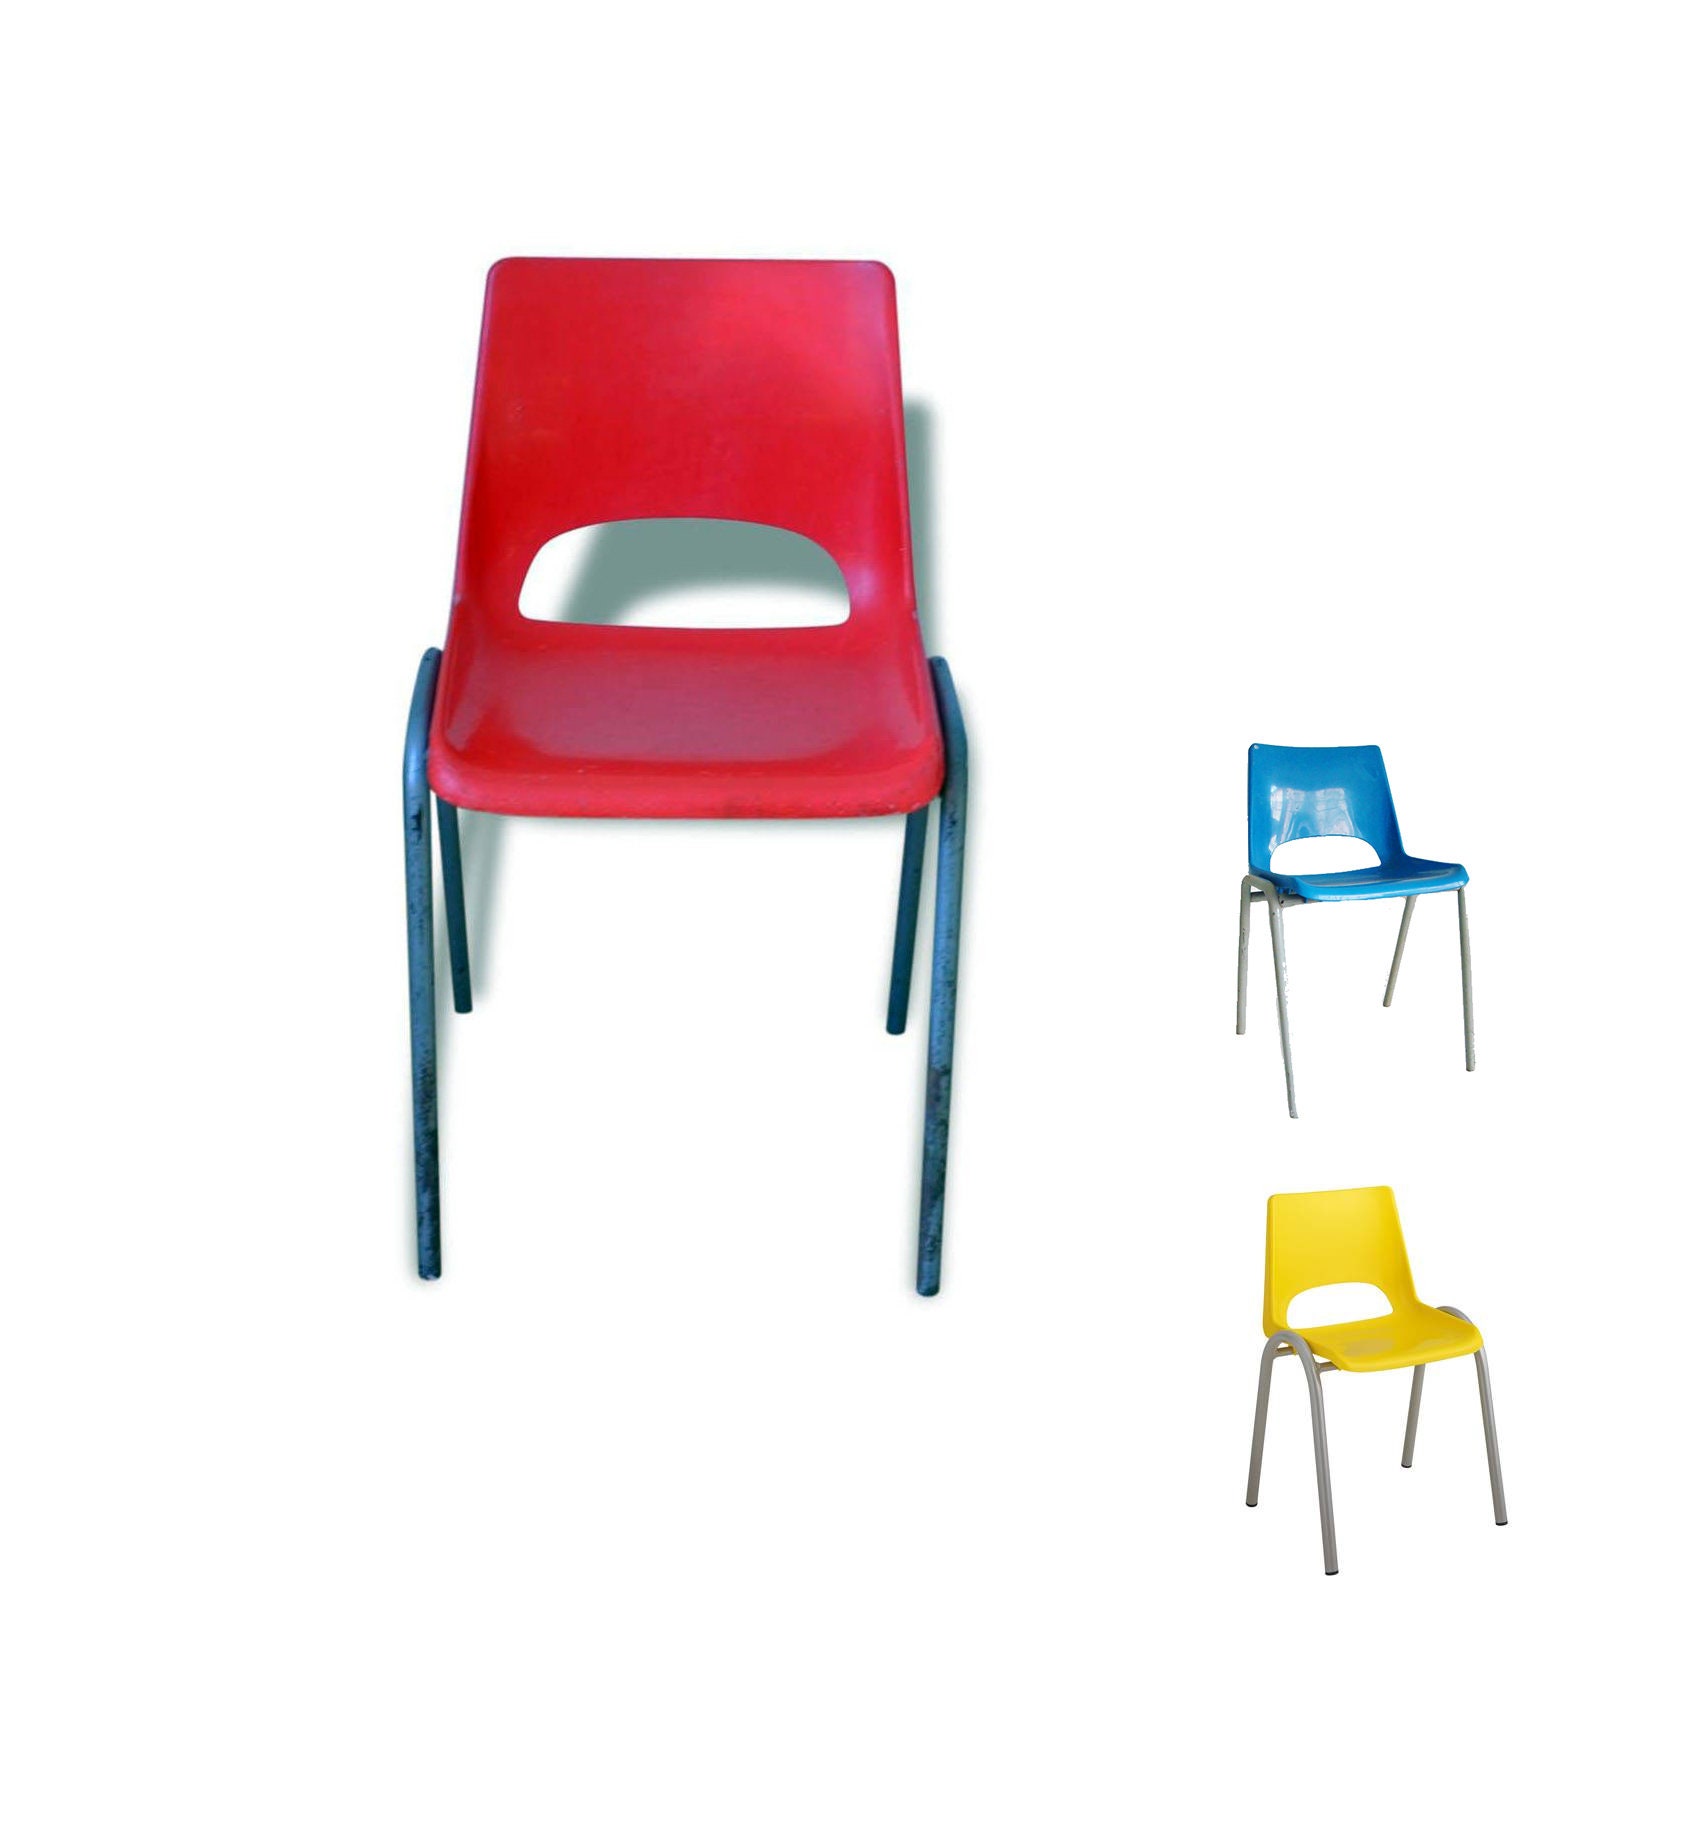 Chaises d'école Maternelle Vintage/Chaise Enfant Rouge Chaise Scolaire Magic'puce